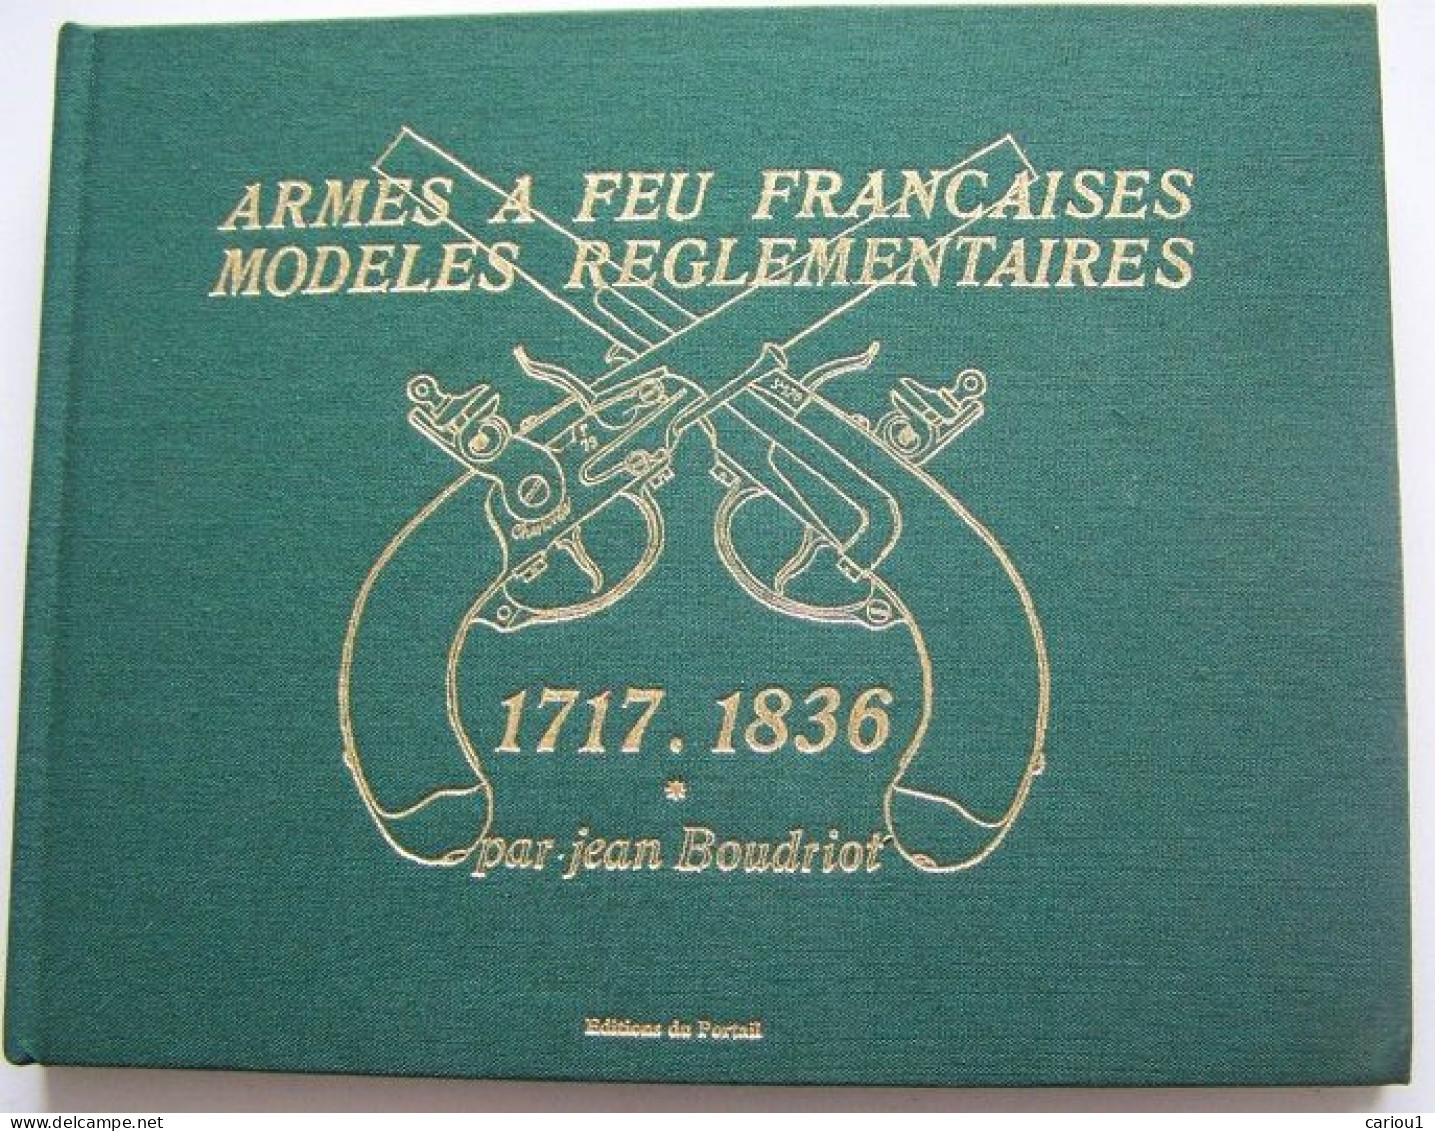 C1  Boudriot ARMES A FEU FRANCAISES 1717 1836 Tome 1 1997 Relie ILLUSTRE - Frans